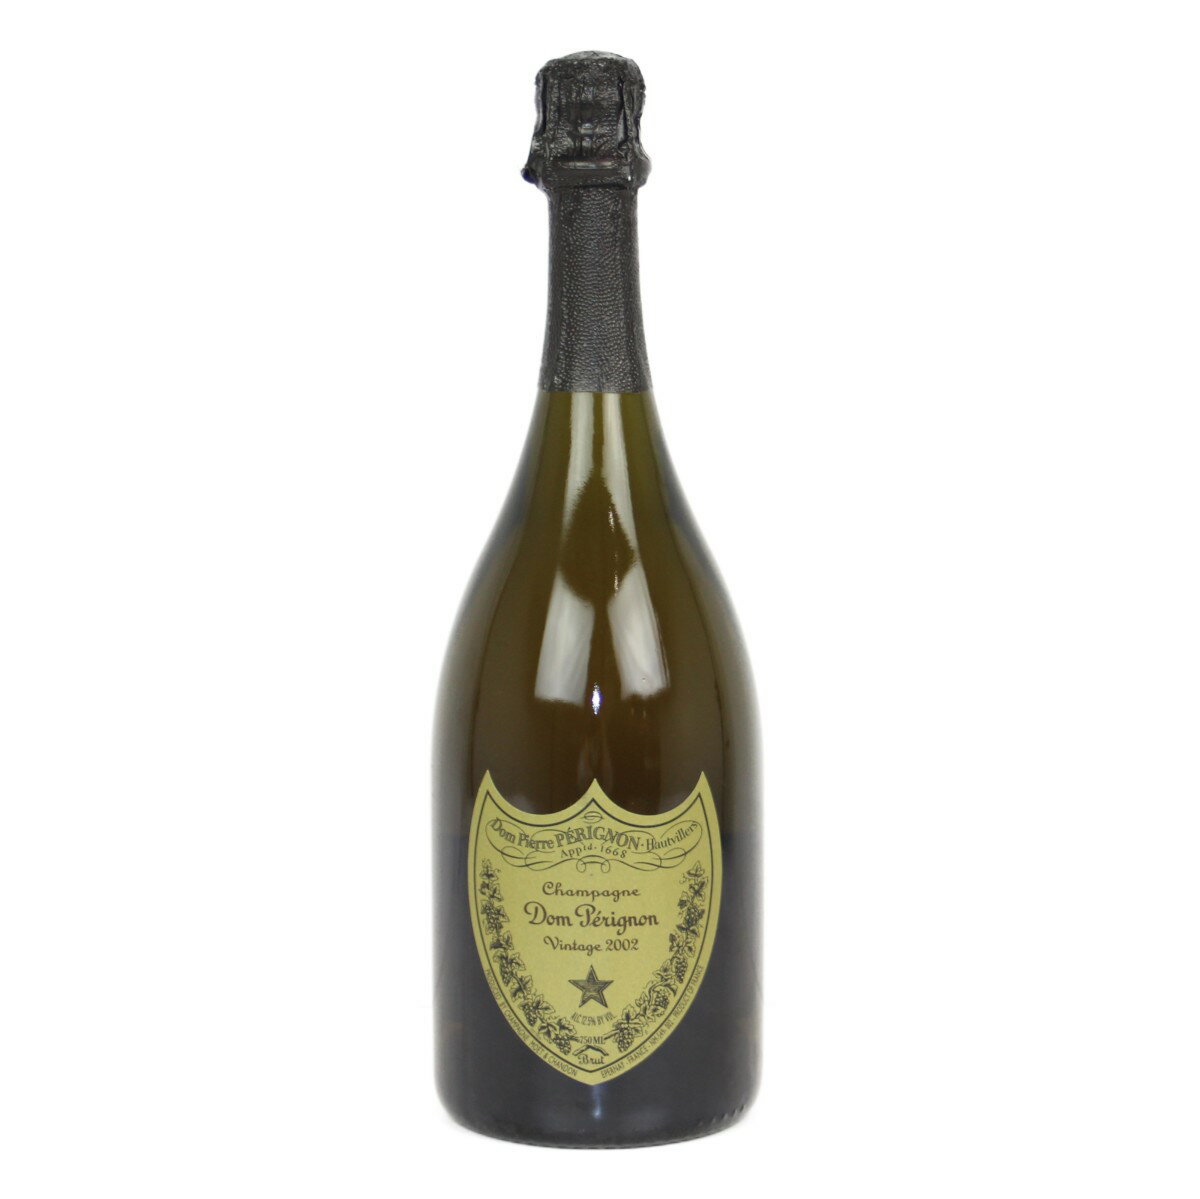 【箱あり】【未開封】Dom perignon 2002 Vintage Champagne ドンペリニヨン 2002年 ヴィンテージ シャンパーニュ シャンパン ワイン 750ml 12.5%【古酒・中古】松前R56店